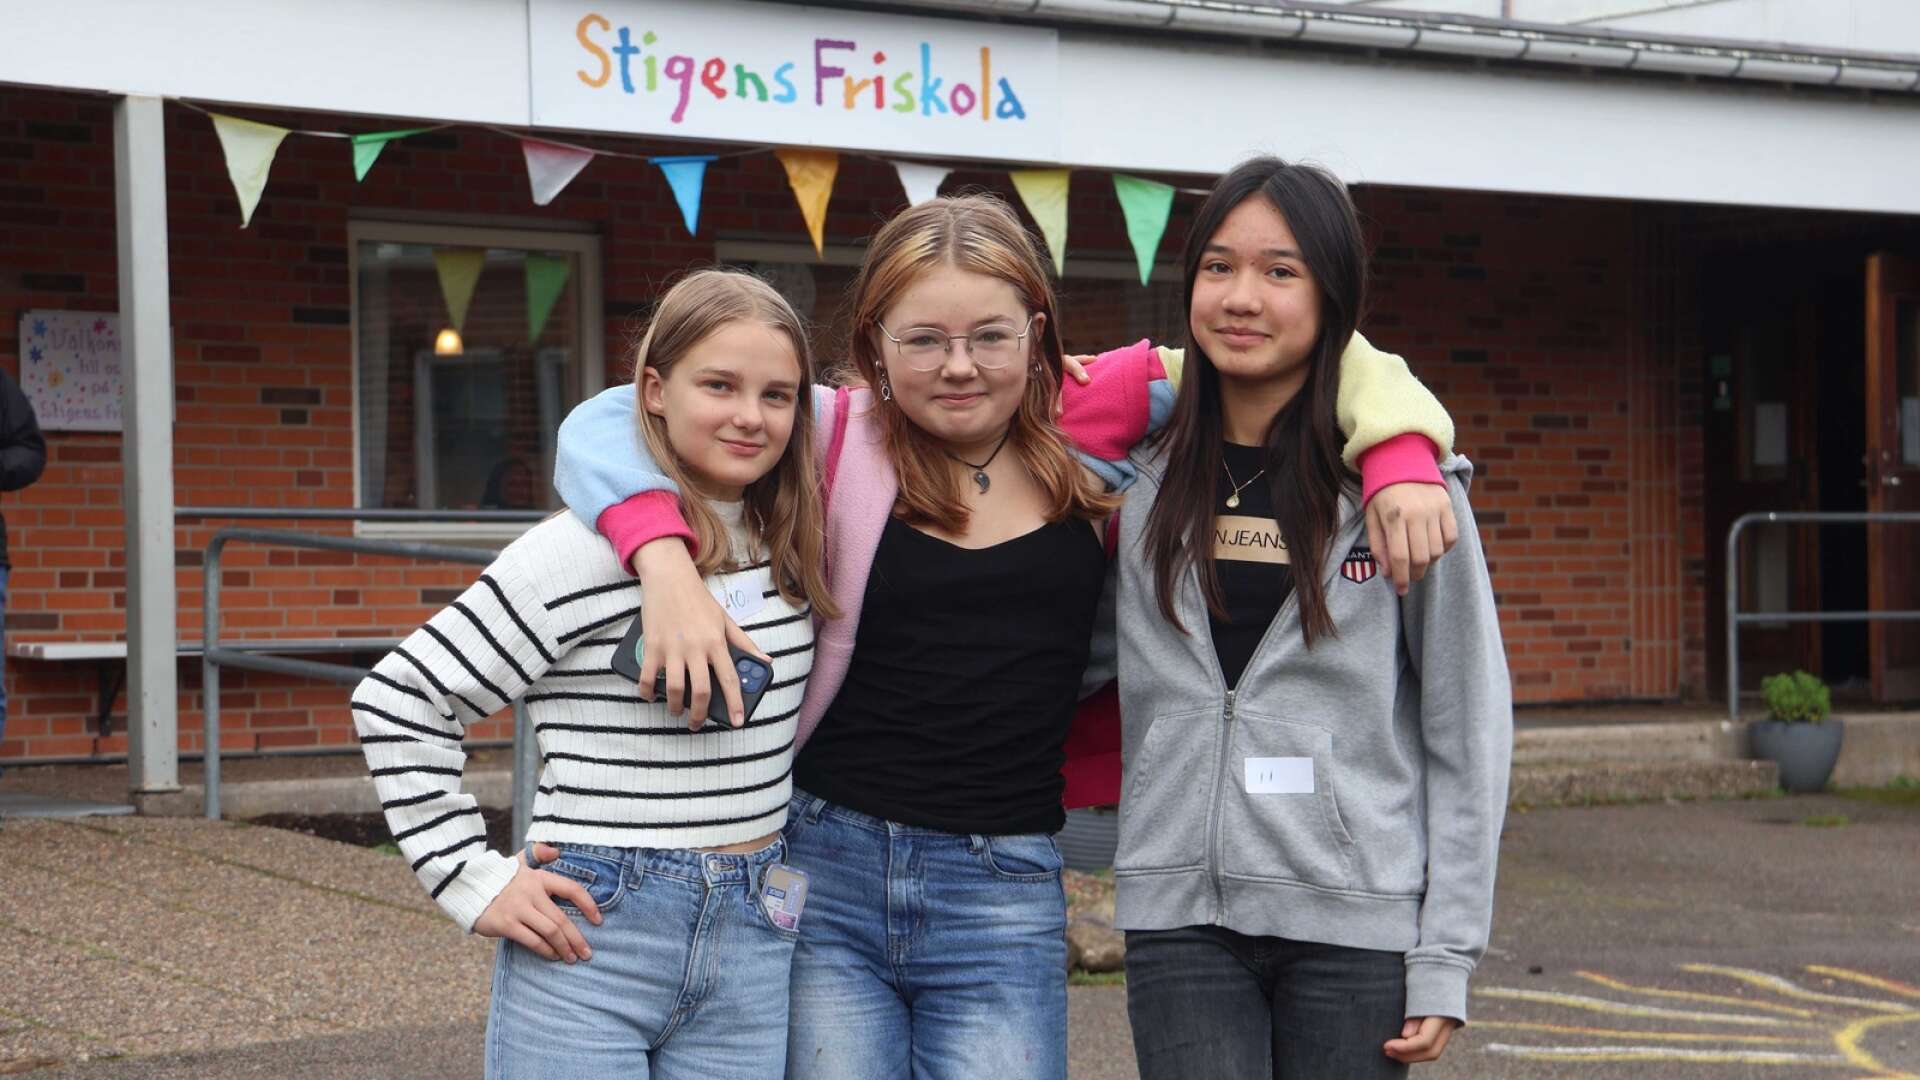 Från vänster Perla Pokvytyte, Emilia Overland och Alina Jurdzinski har gått på Stigens friskola hela skoltiden och har trivts mycket bra.